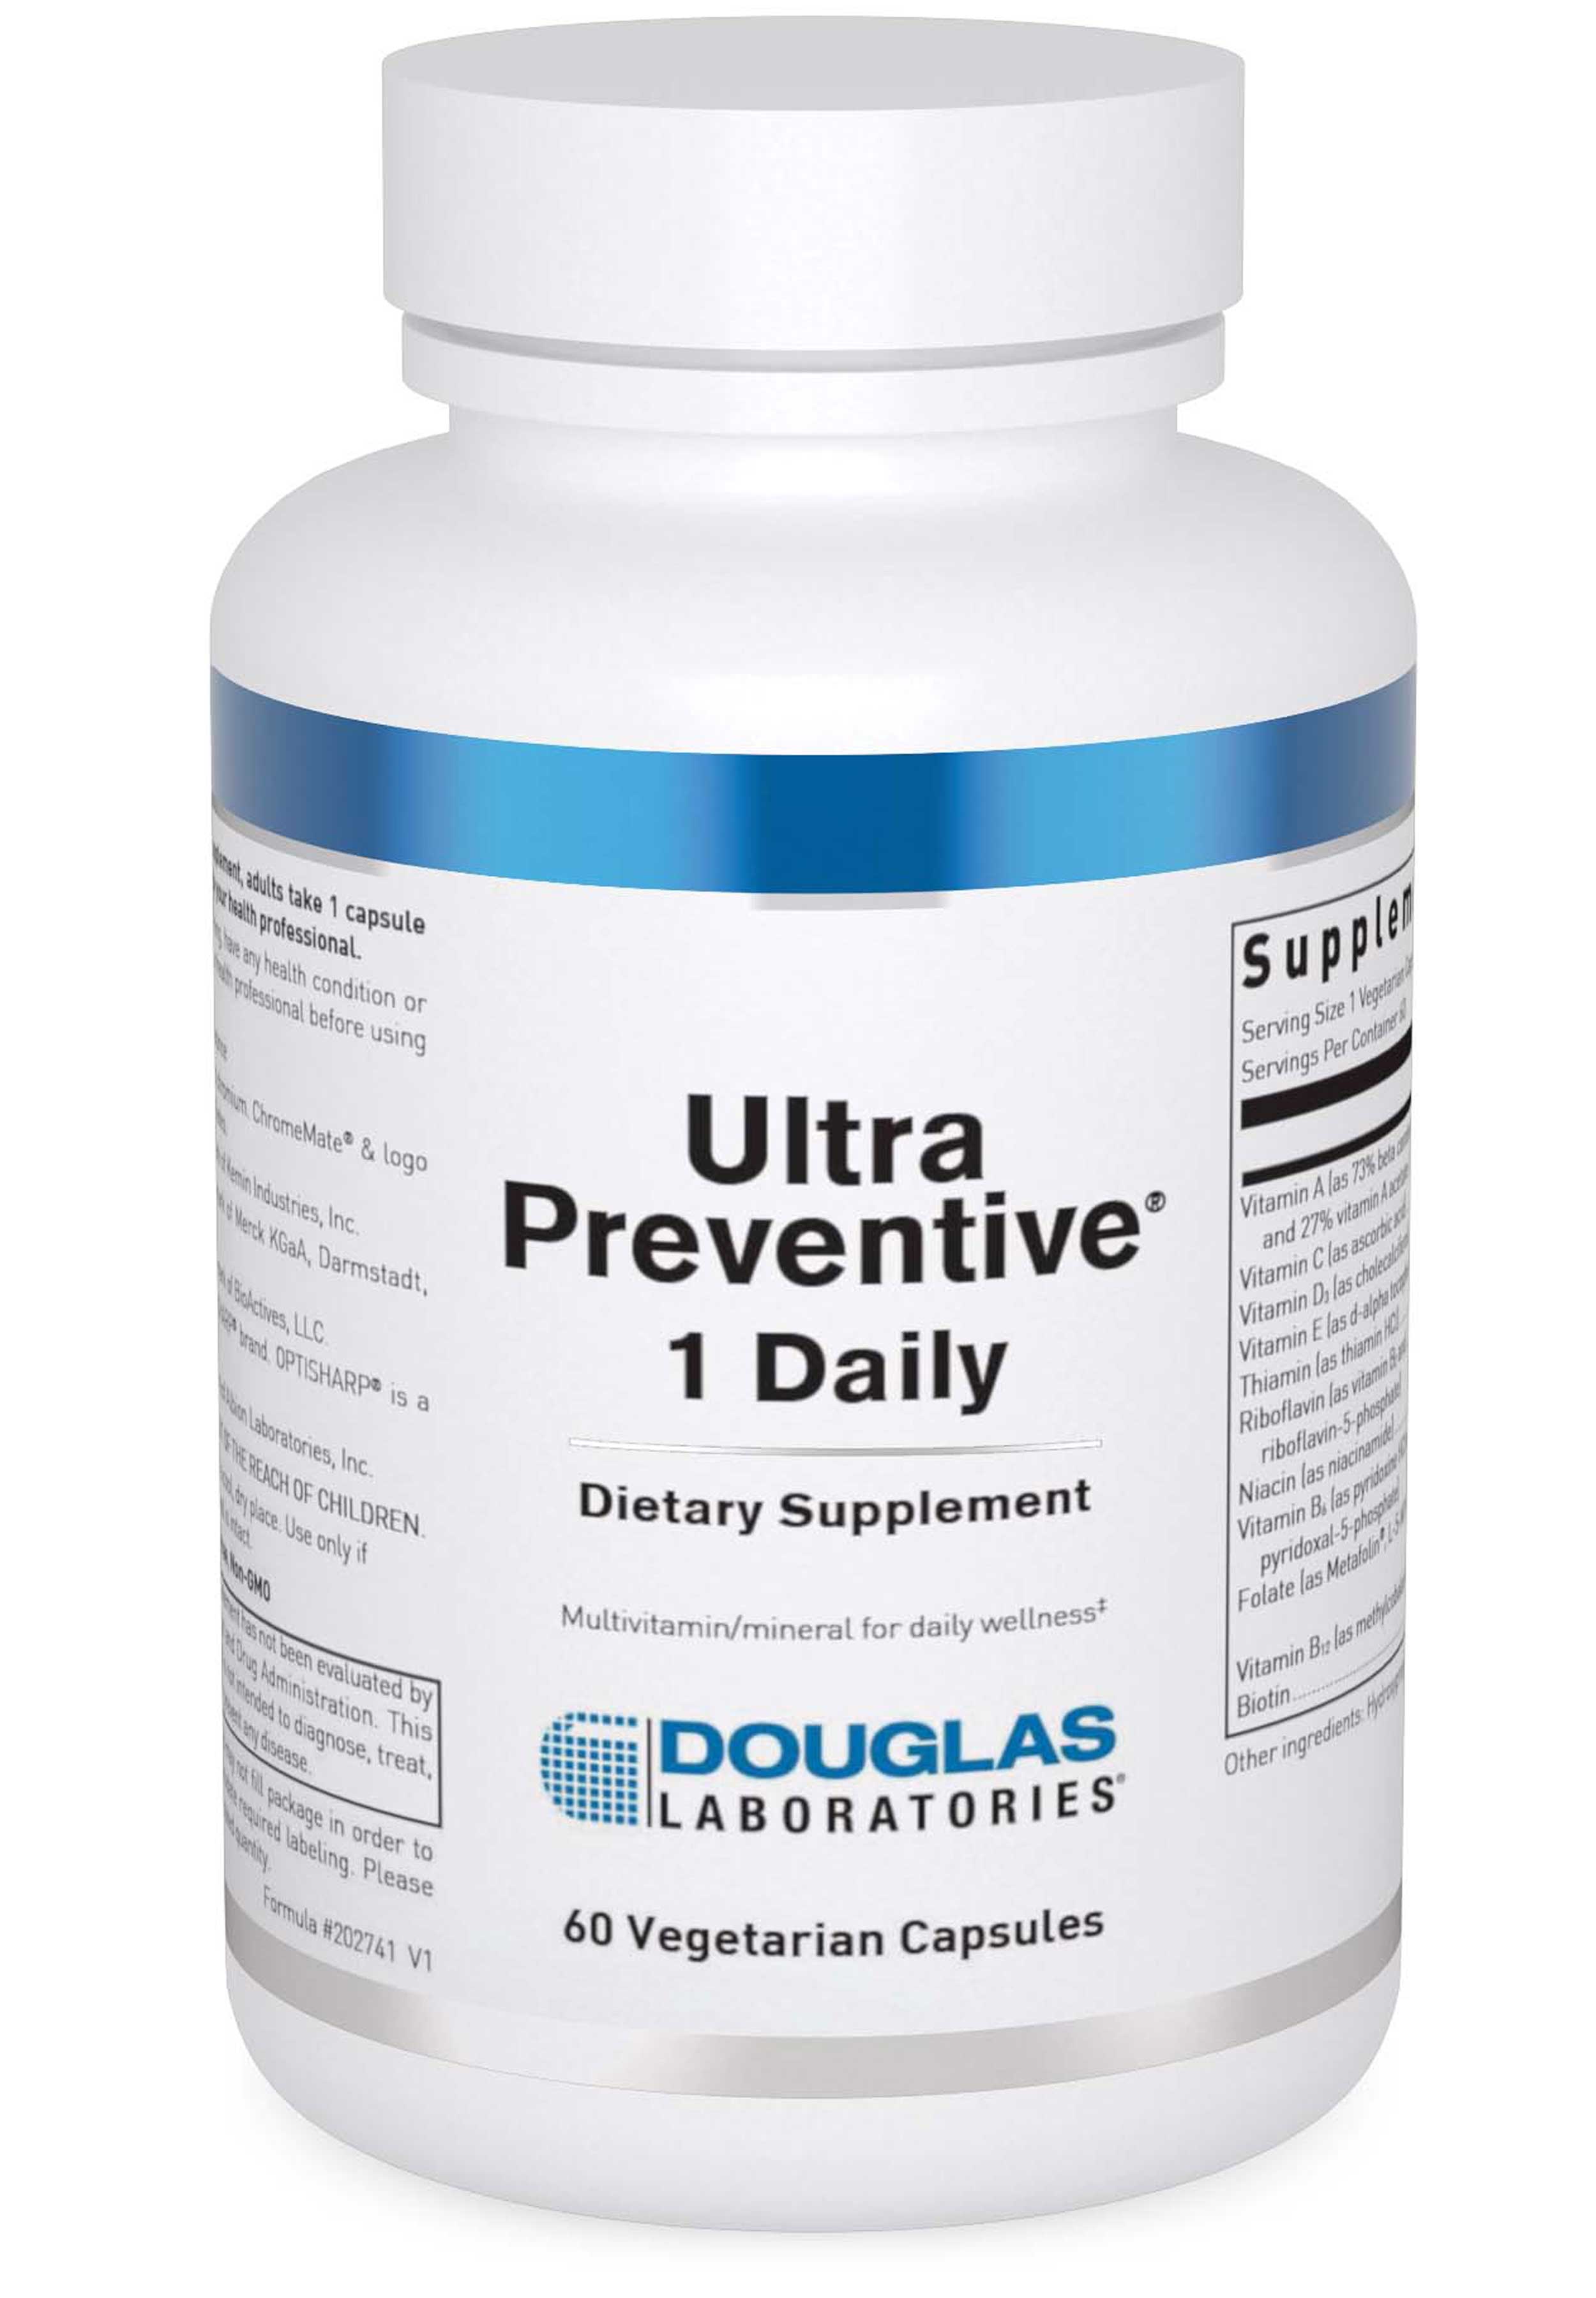 Douglas Laboratories Ultra Preventive 1 Daily